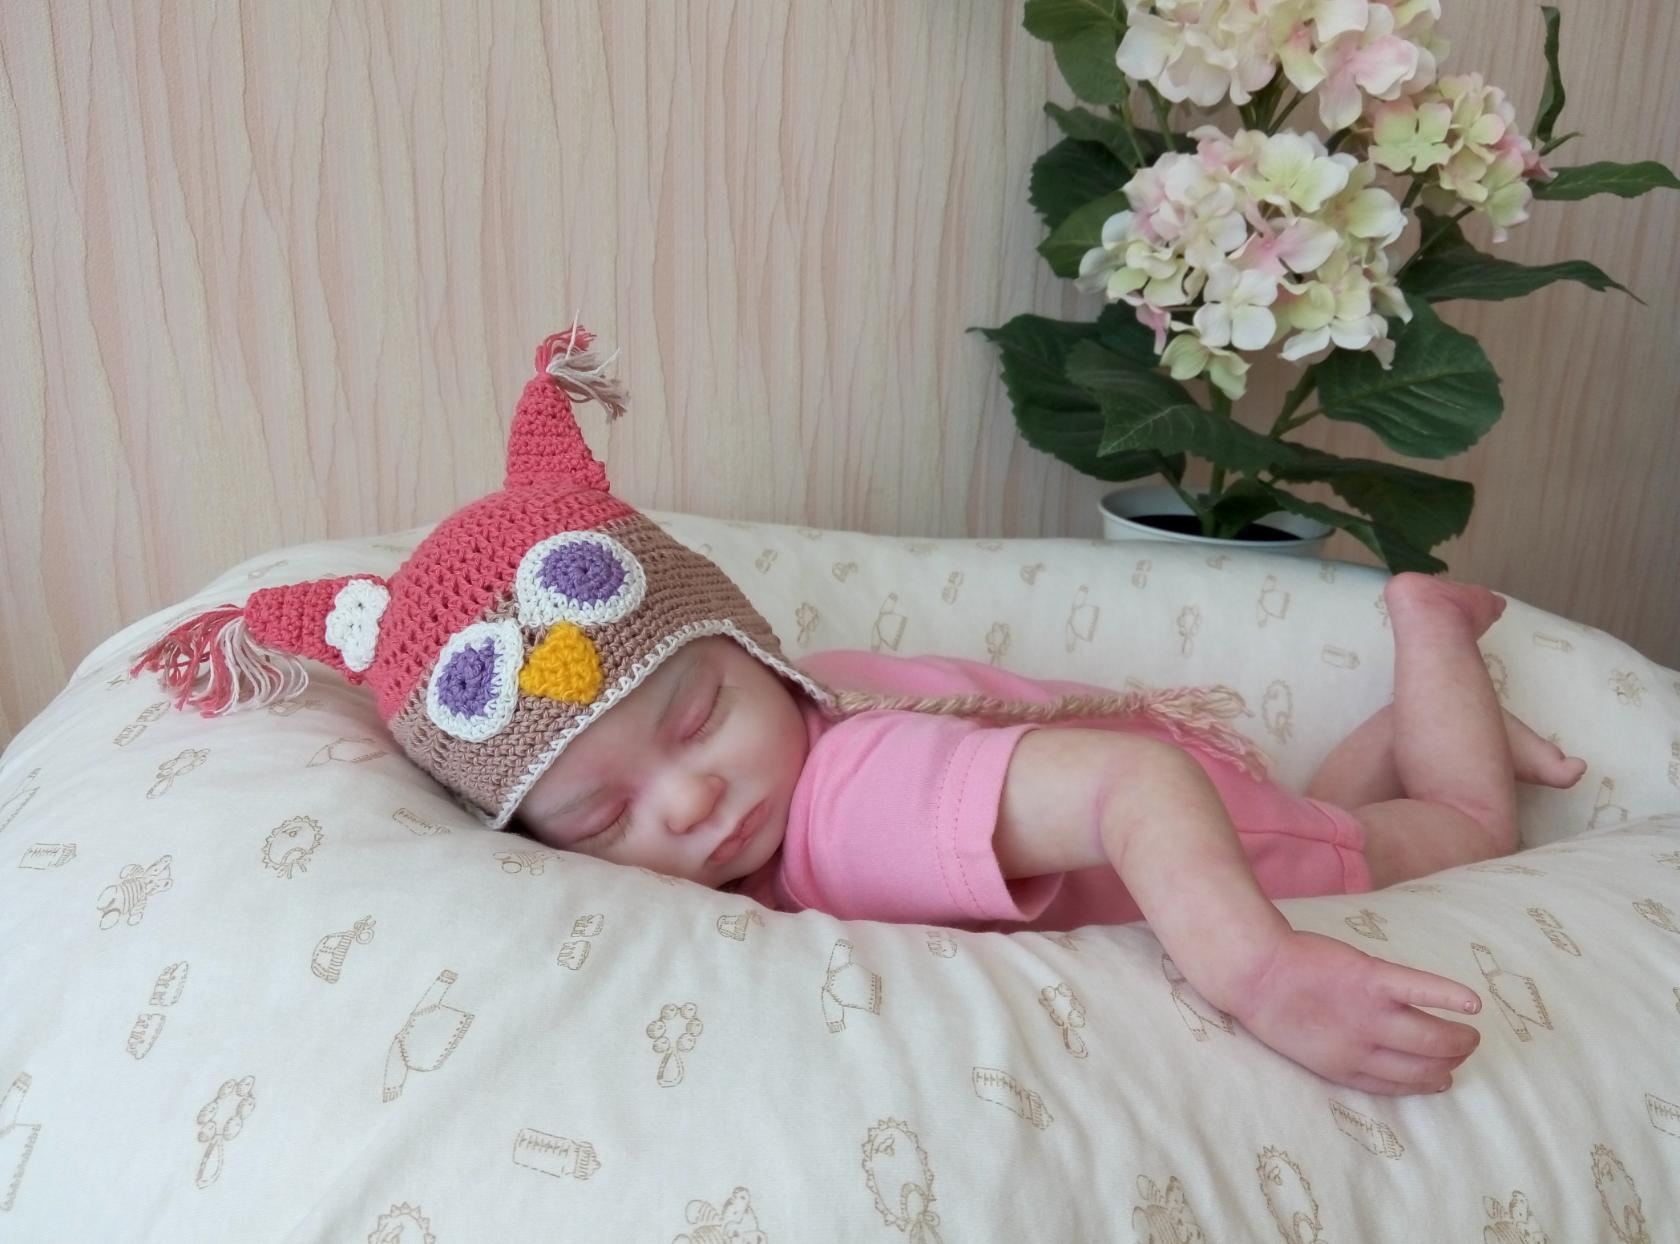 Для своих кукол Анна Затеева придумывает забавные костюмчики — на младенце шапочка в виде совёнка